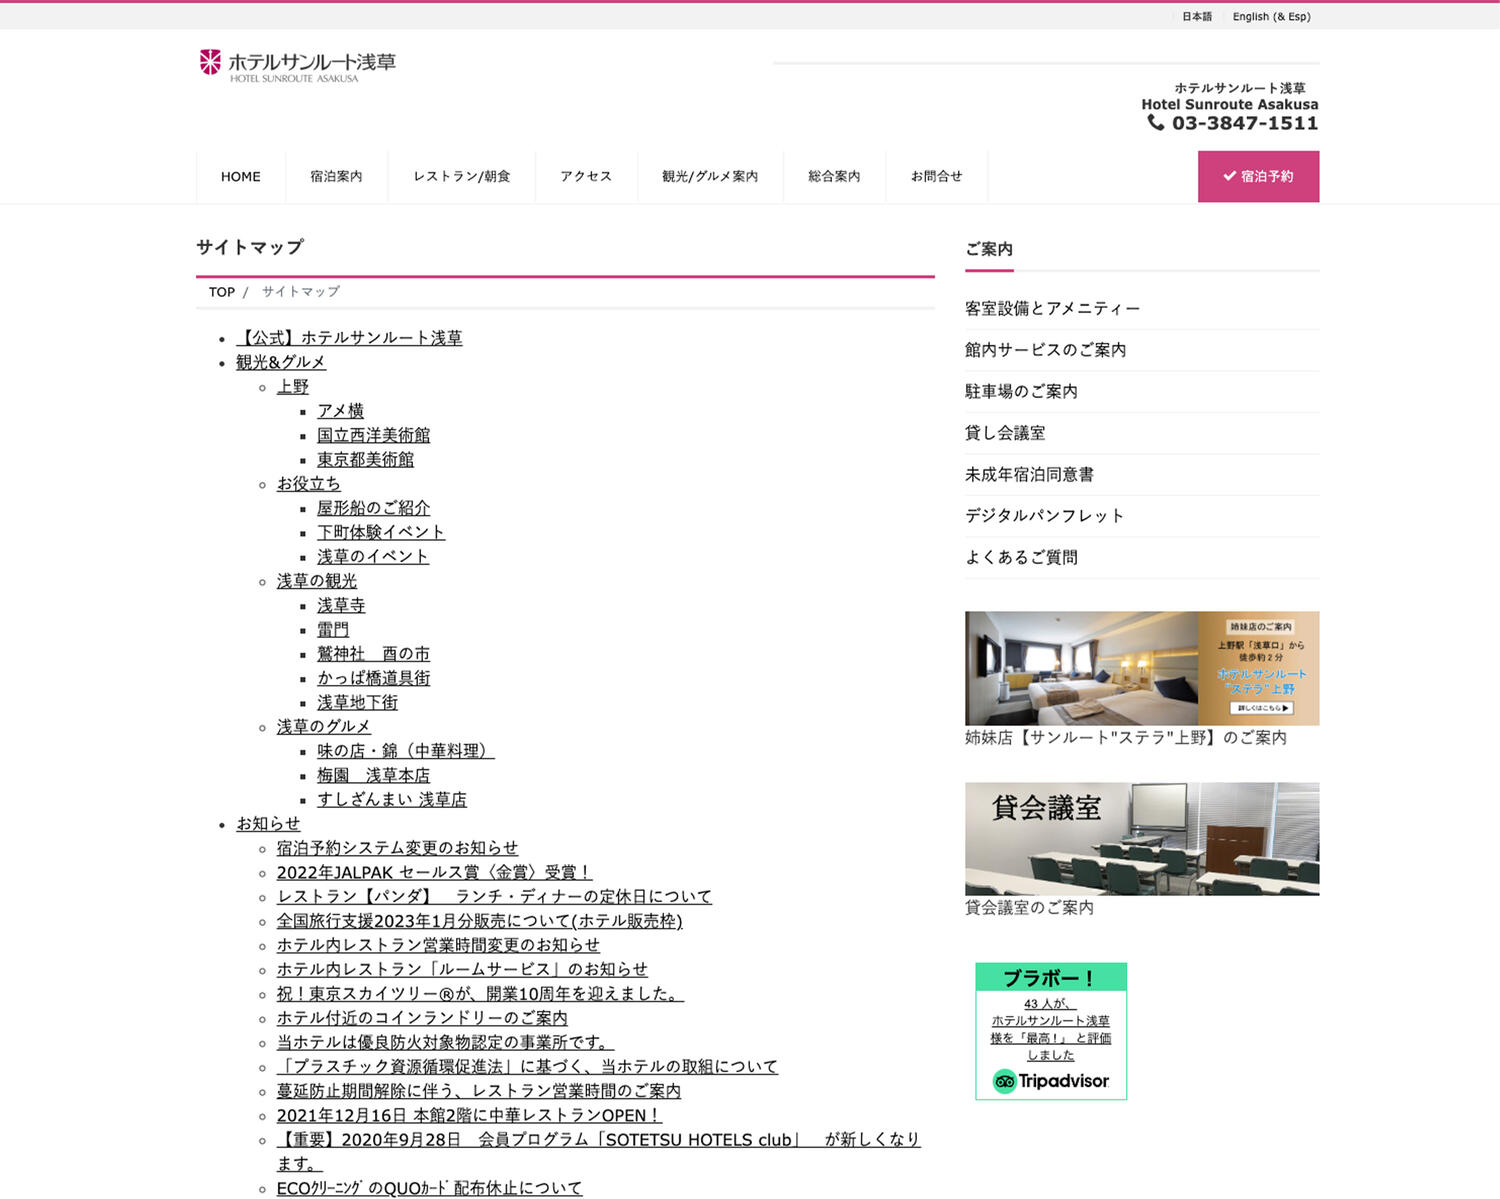 ホテルサンルート浅草 サイトマップ